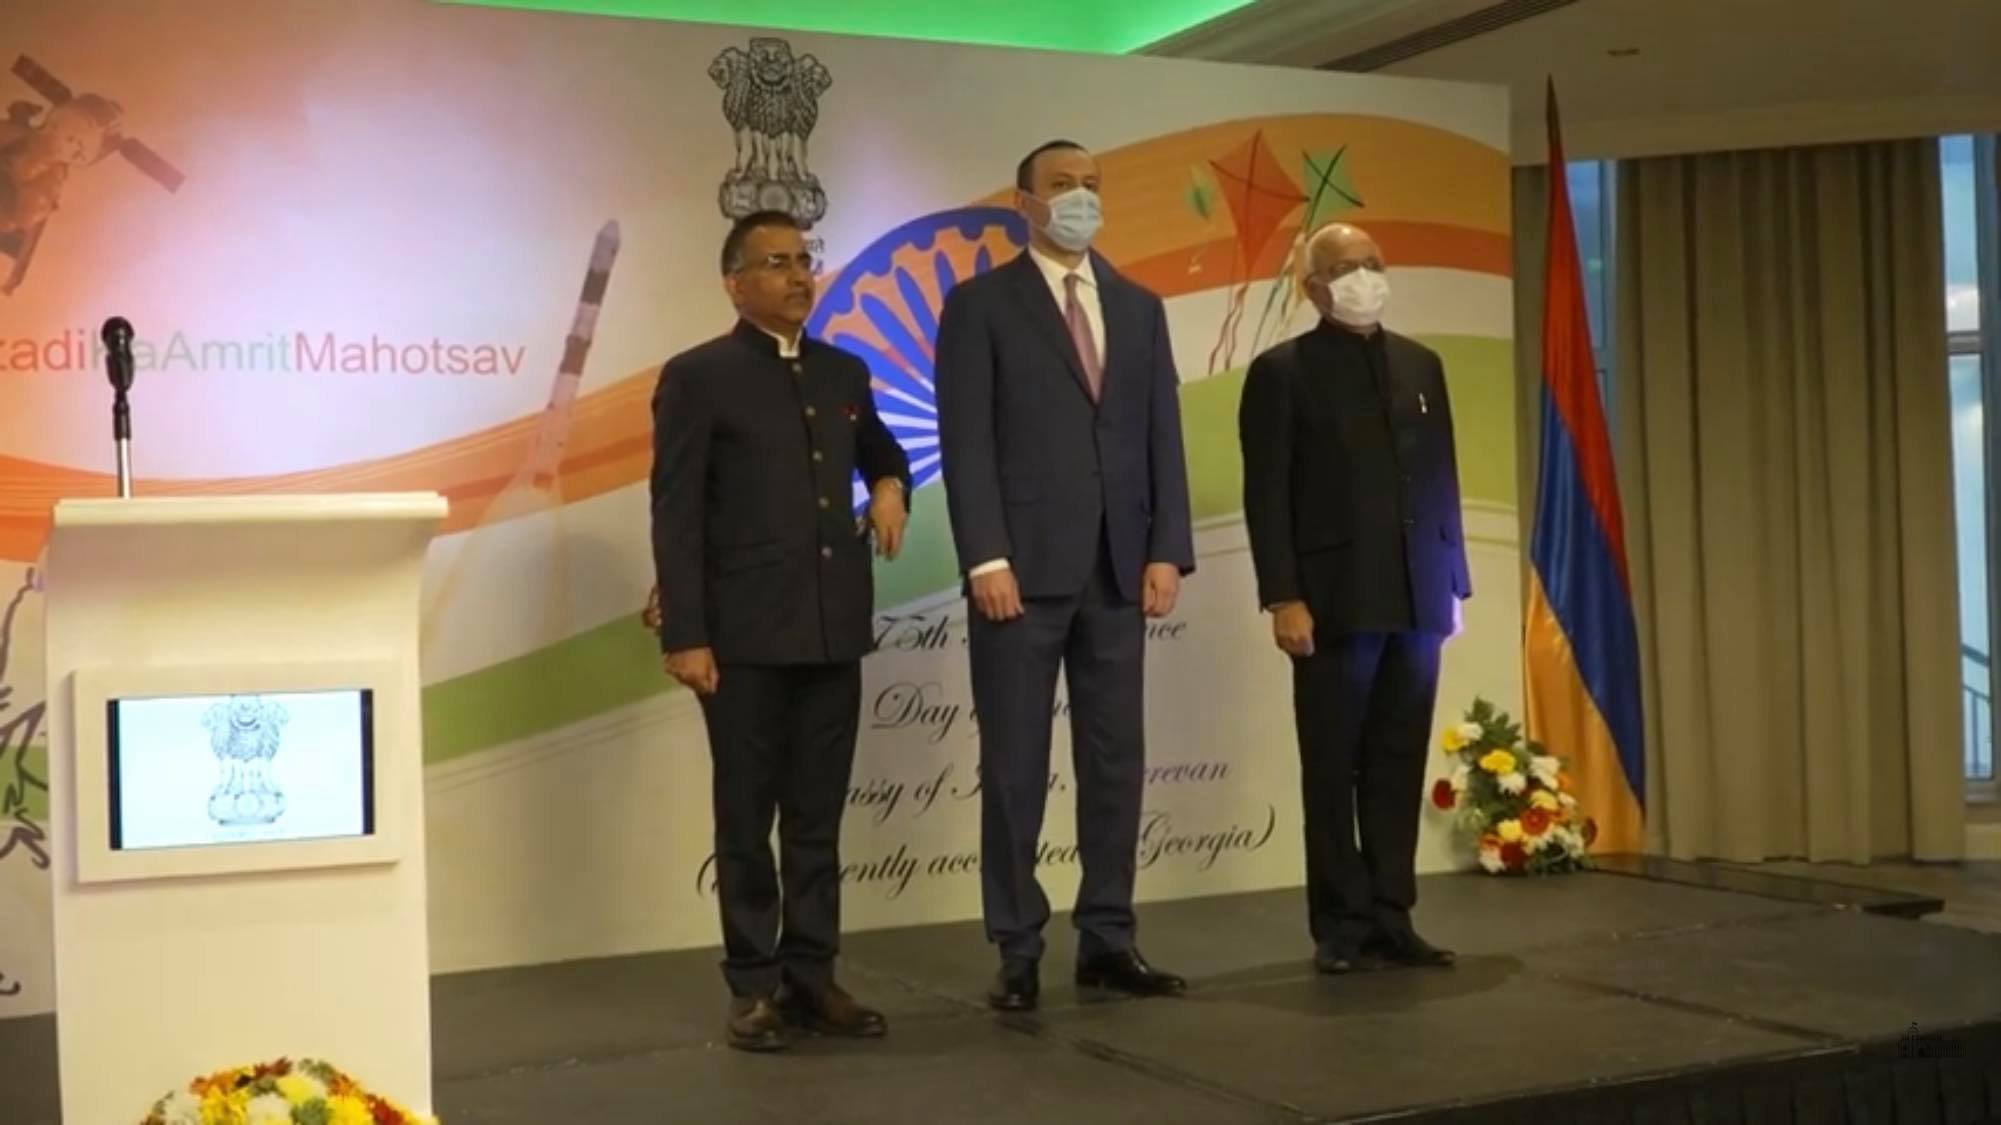 Հայաստանն ու Հնդկաստանը ձևավորել են համագործակցության դինամիկ ձևաչափ. Արմեն Գրիգորյանը մասնակցել է Հնդկաստանի անկախությանը նվիրված միջոցառմանը